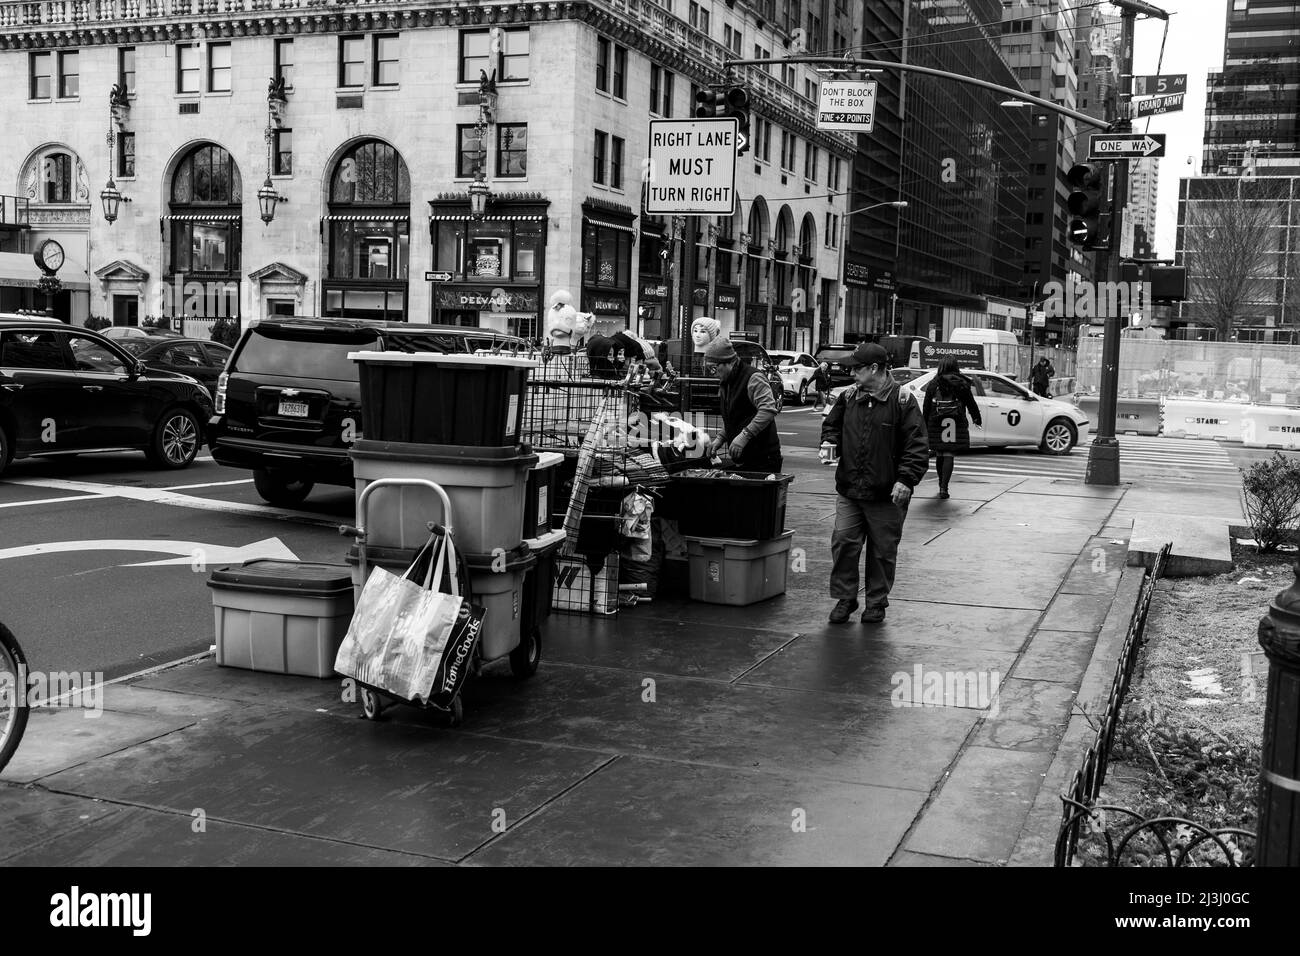 5 AV/59 ST, New York City, NY, USA, street vendor and passant Stock Photo